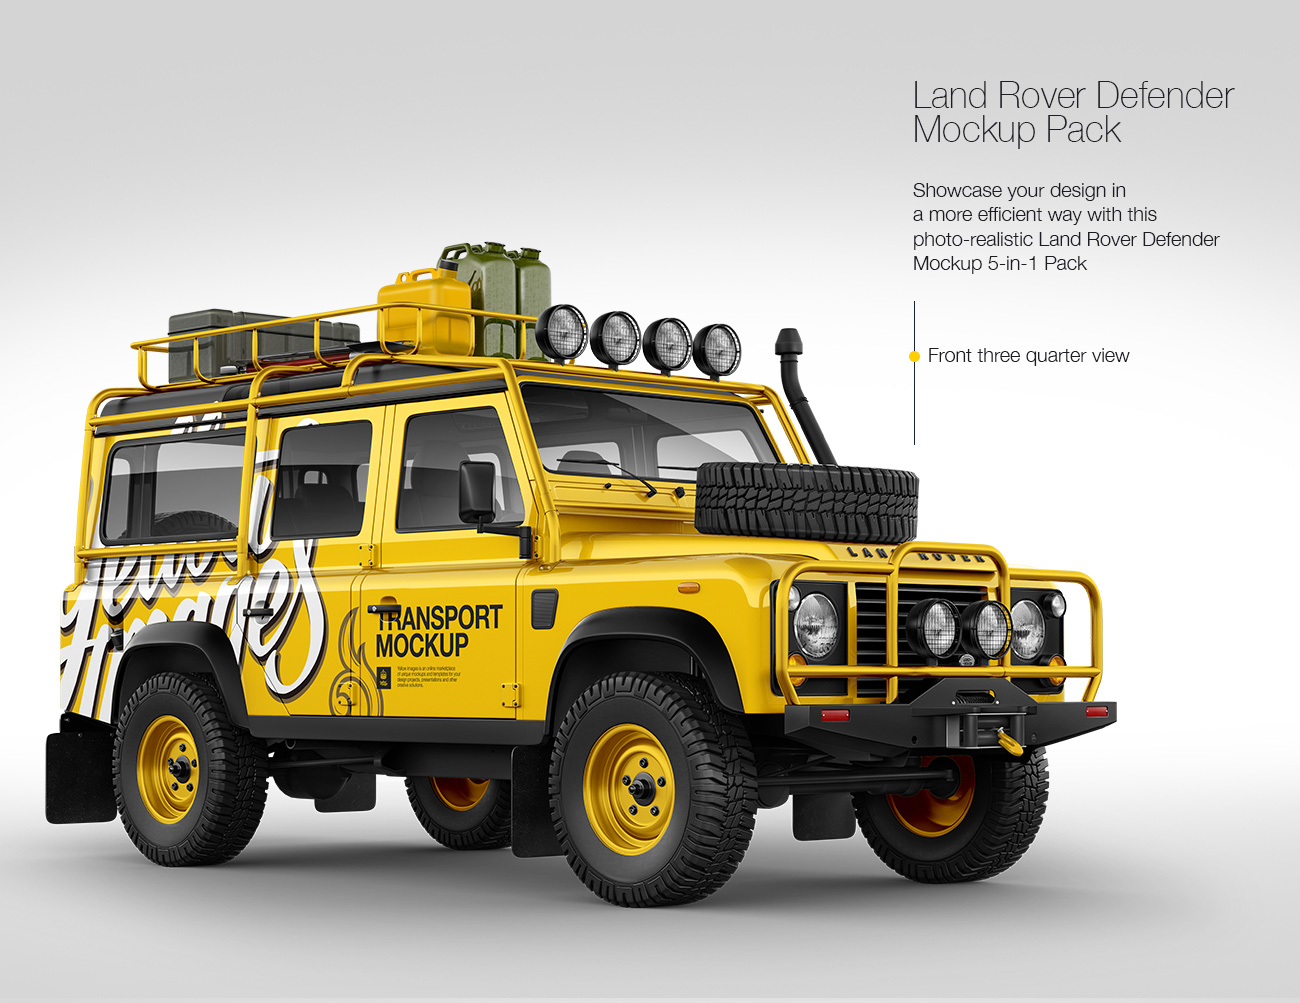 Land Rover Defender Mockup Pack: 5-in-1 Pack